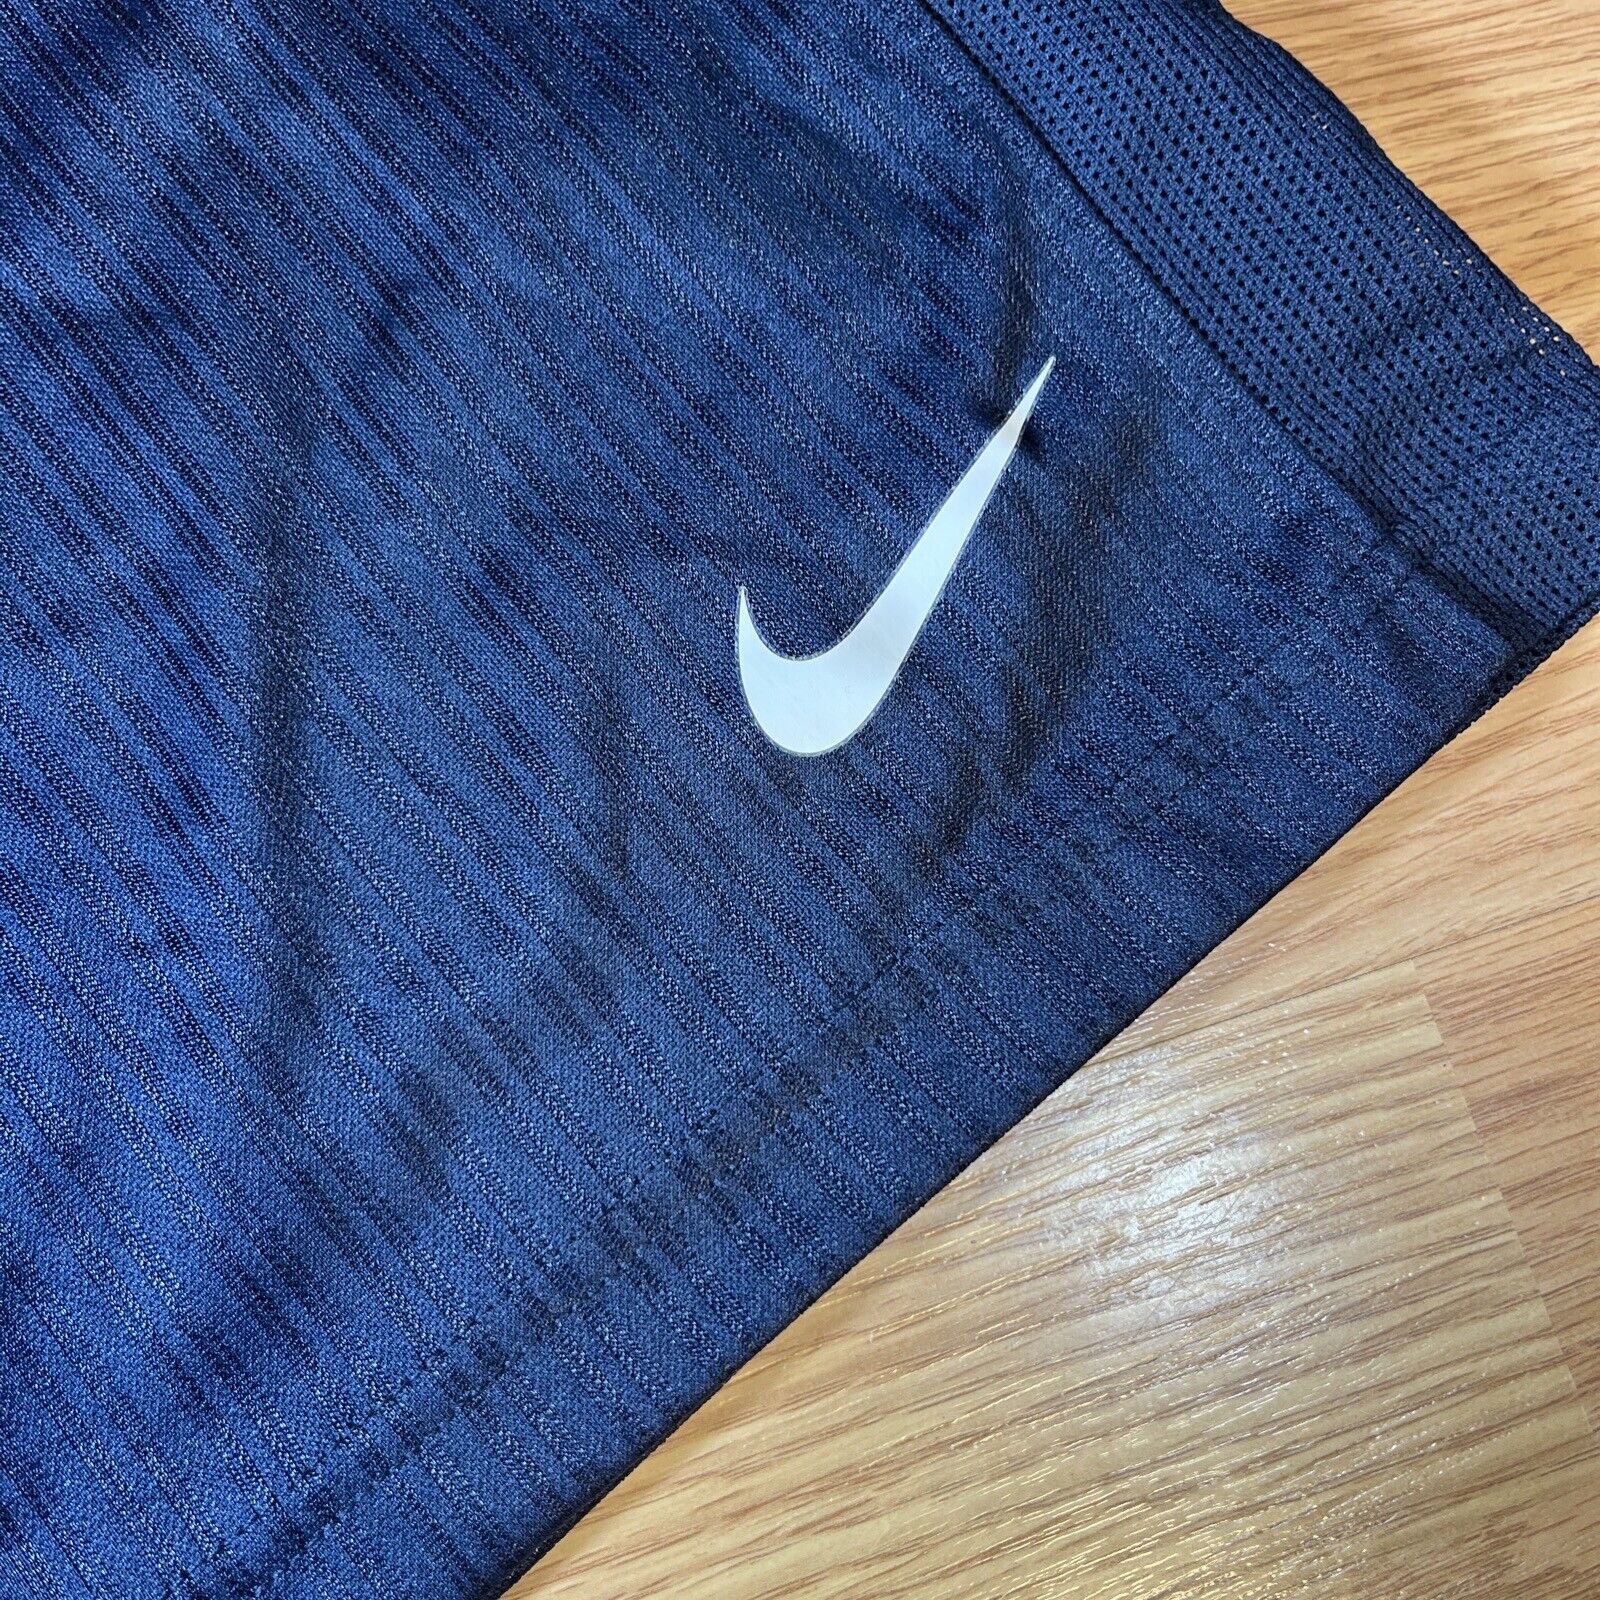 Nike Basketball Shorts Size 2XL - image 2